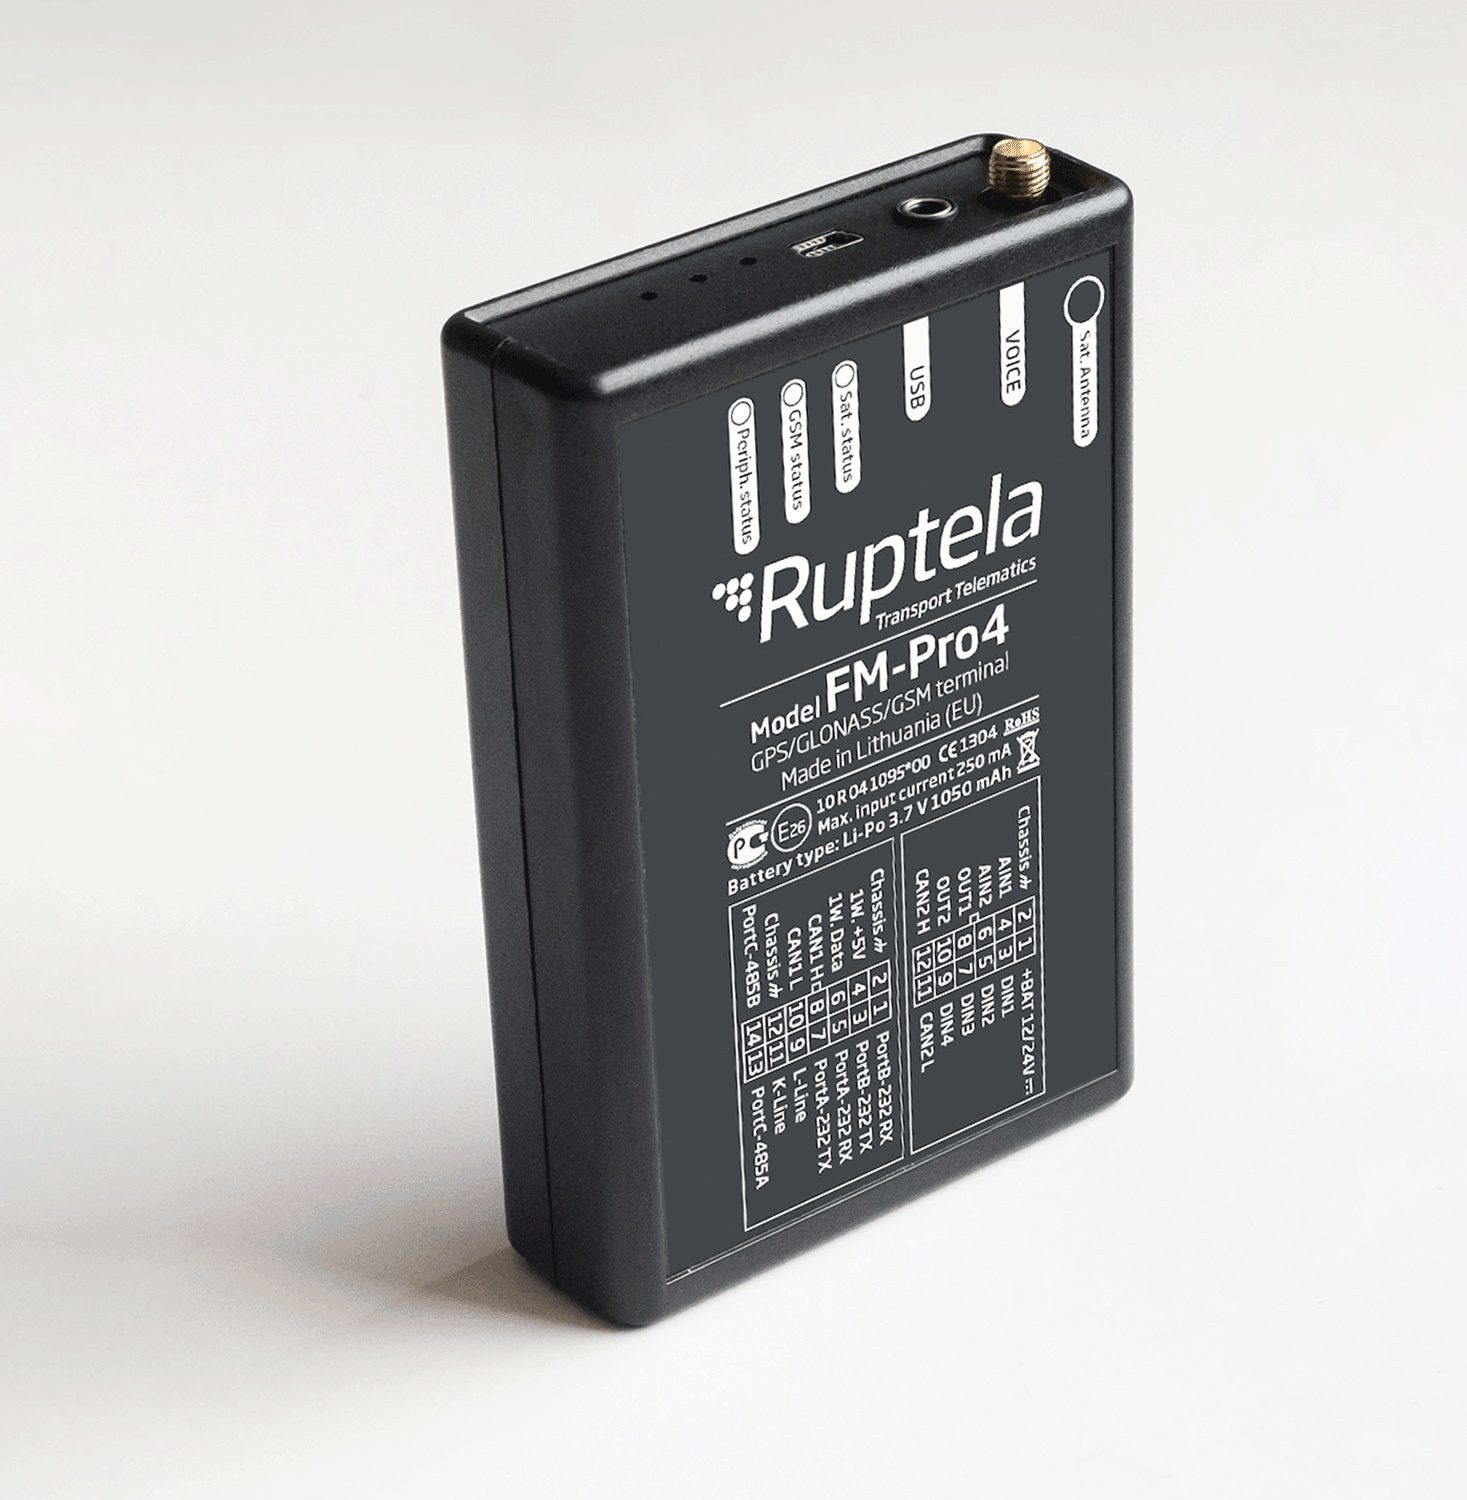 Ruptela-Pro4-GPS-tracker